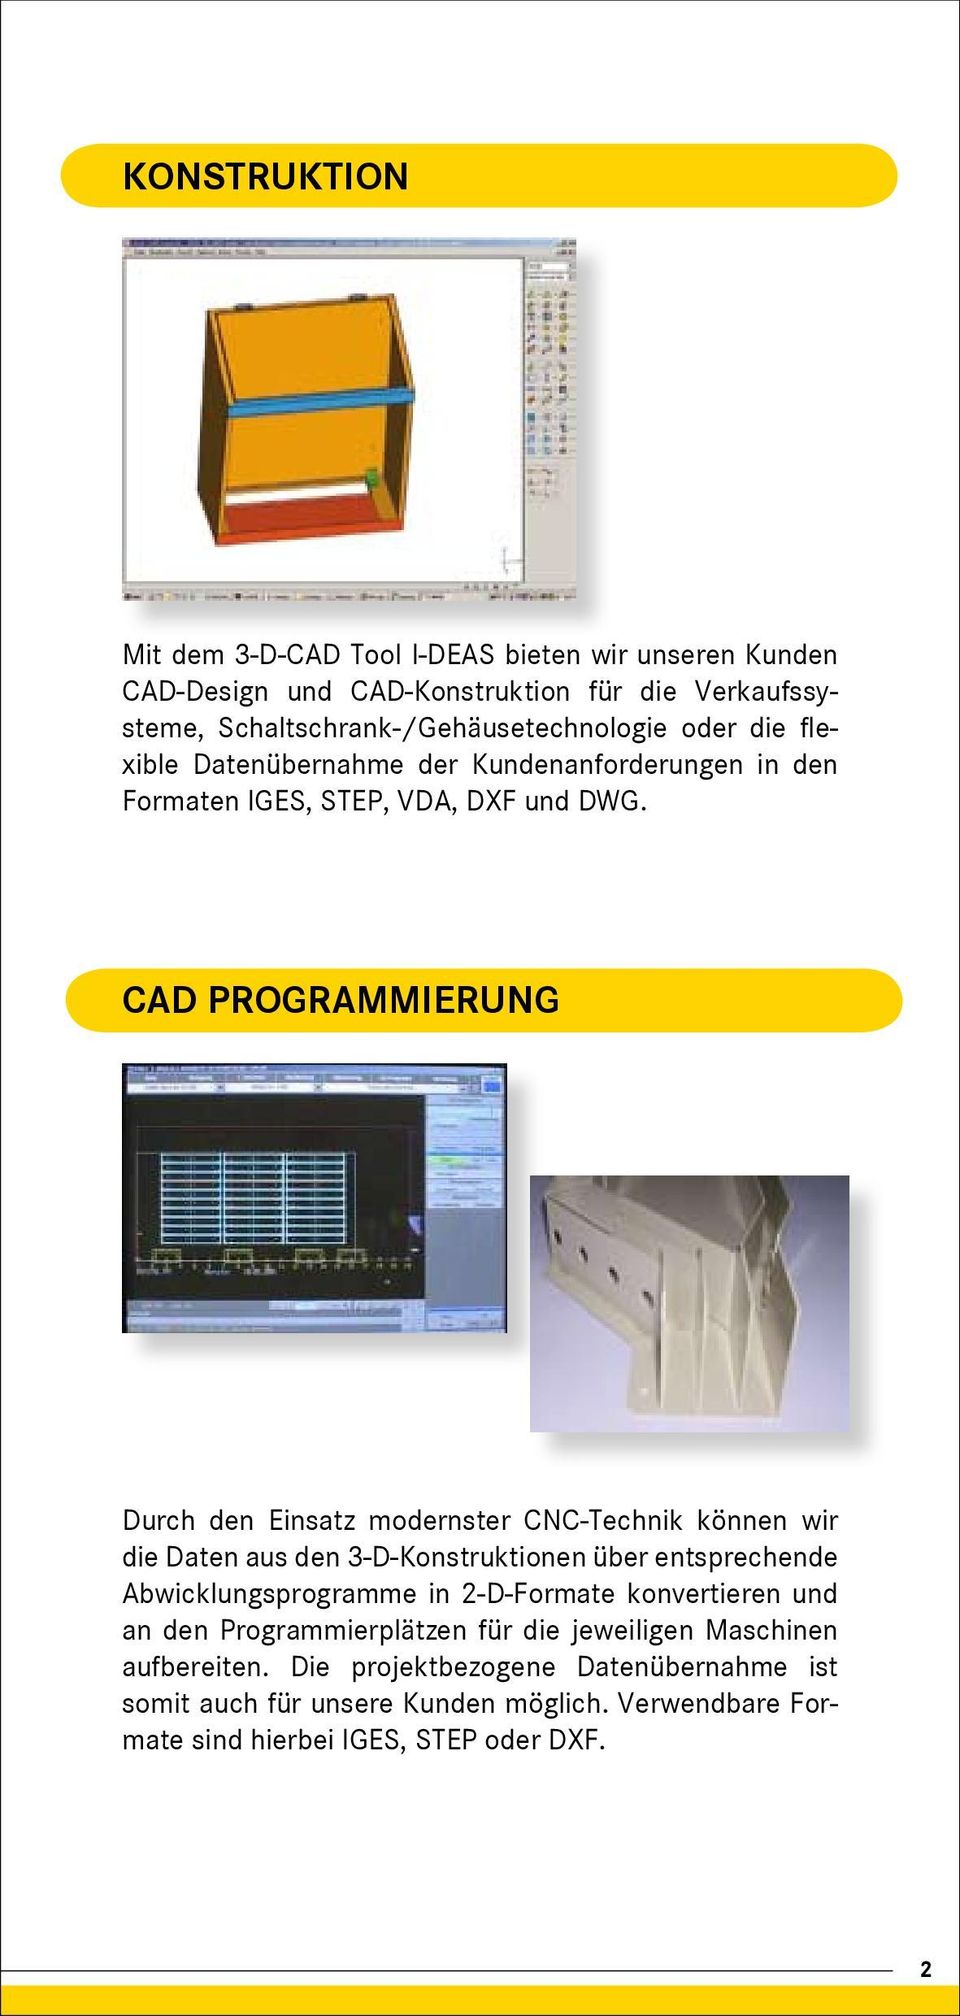 CAD PROGRAMMIERUNG Durch den Einsatz modernster CNC-Technik können wir die Daten aus den 3-D-Konstruktionen über entsprechende Abwicklungsprogramme in